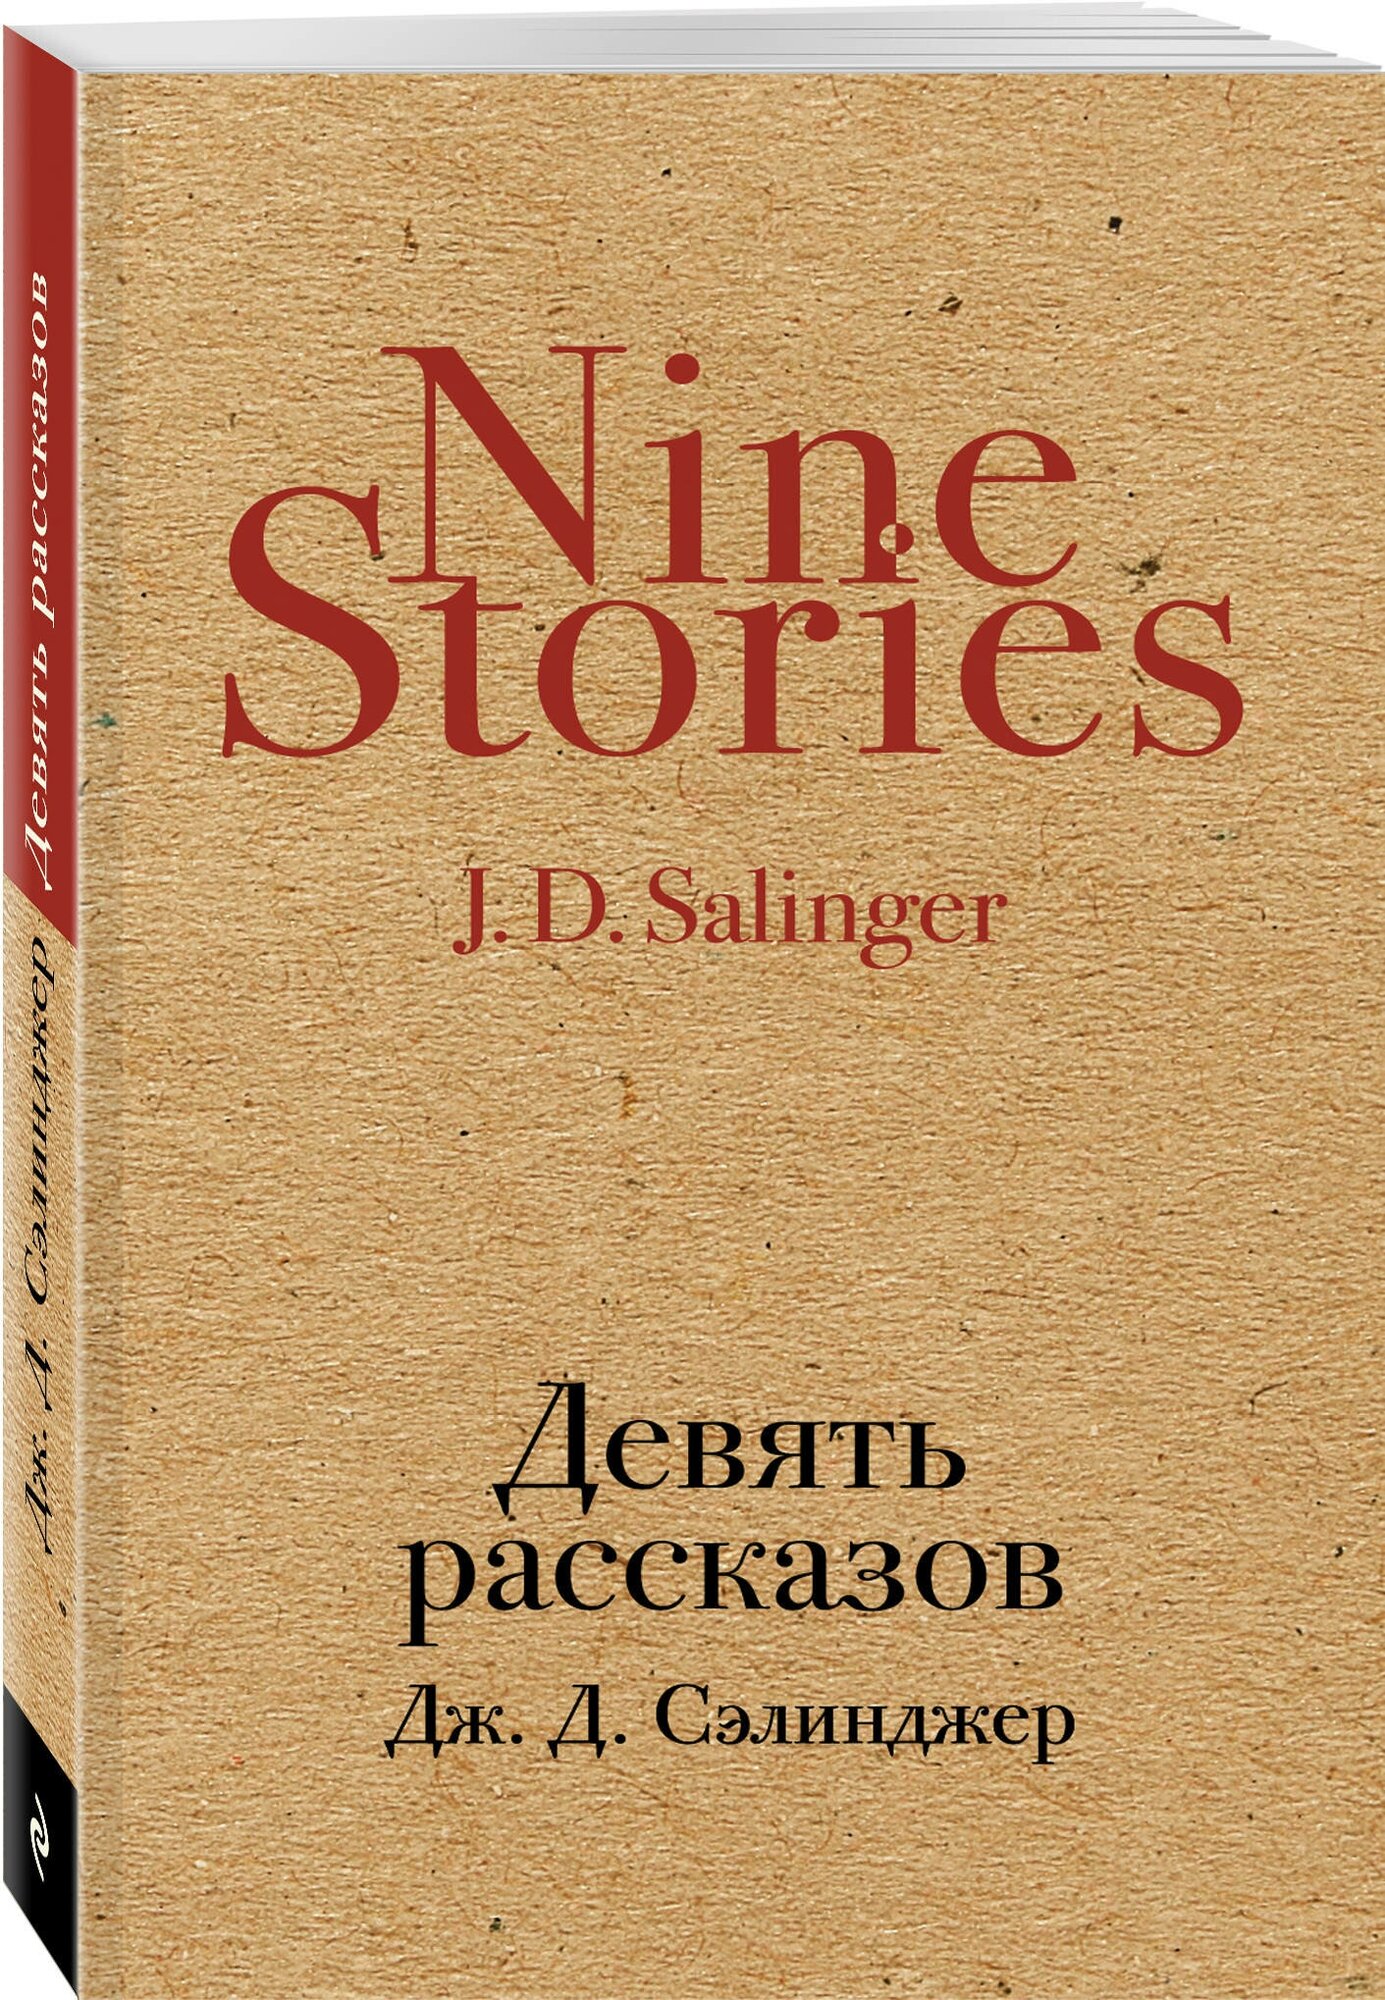 Сэлинджер Дж.Д. "Девять рассказов / Nine Stories"